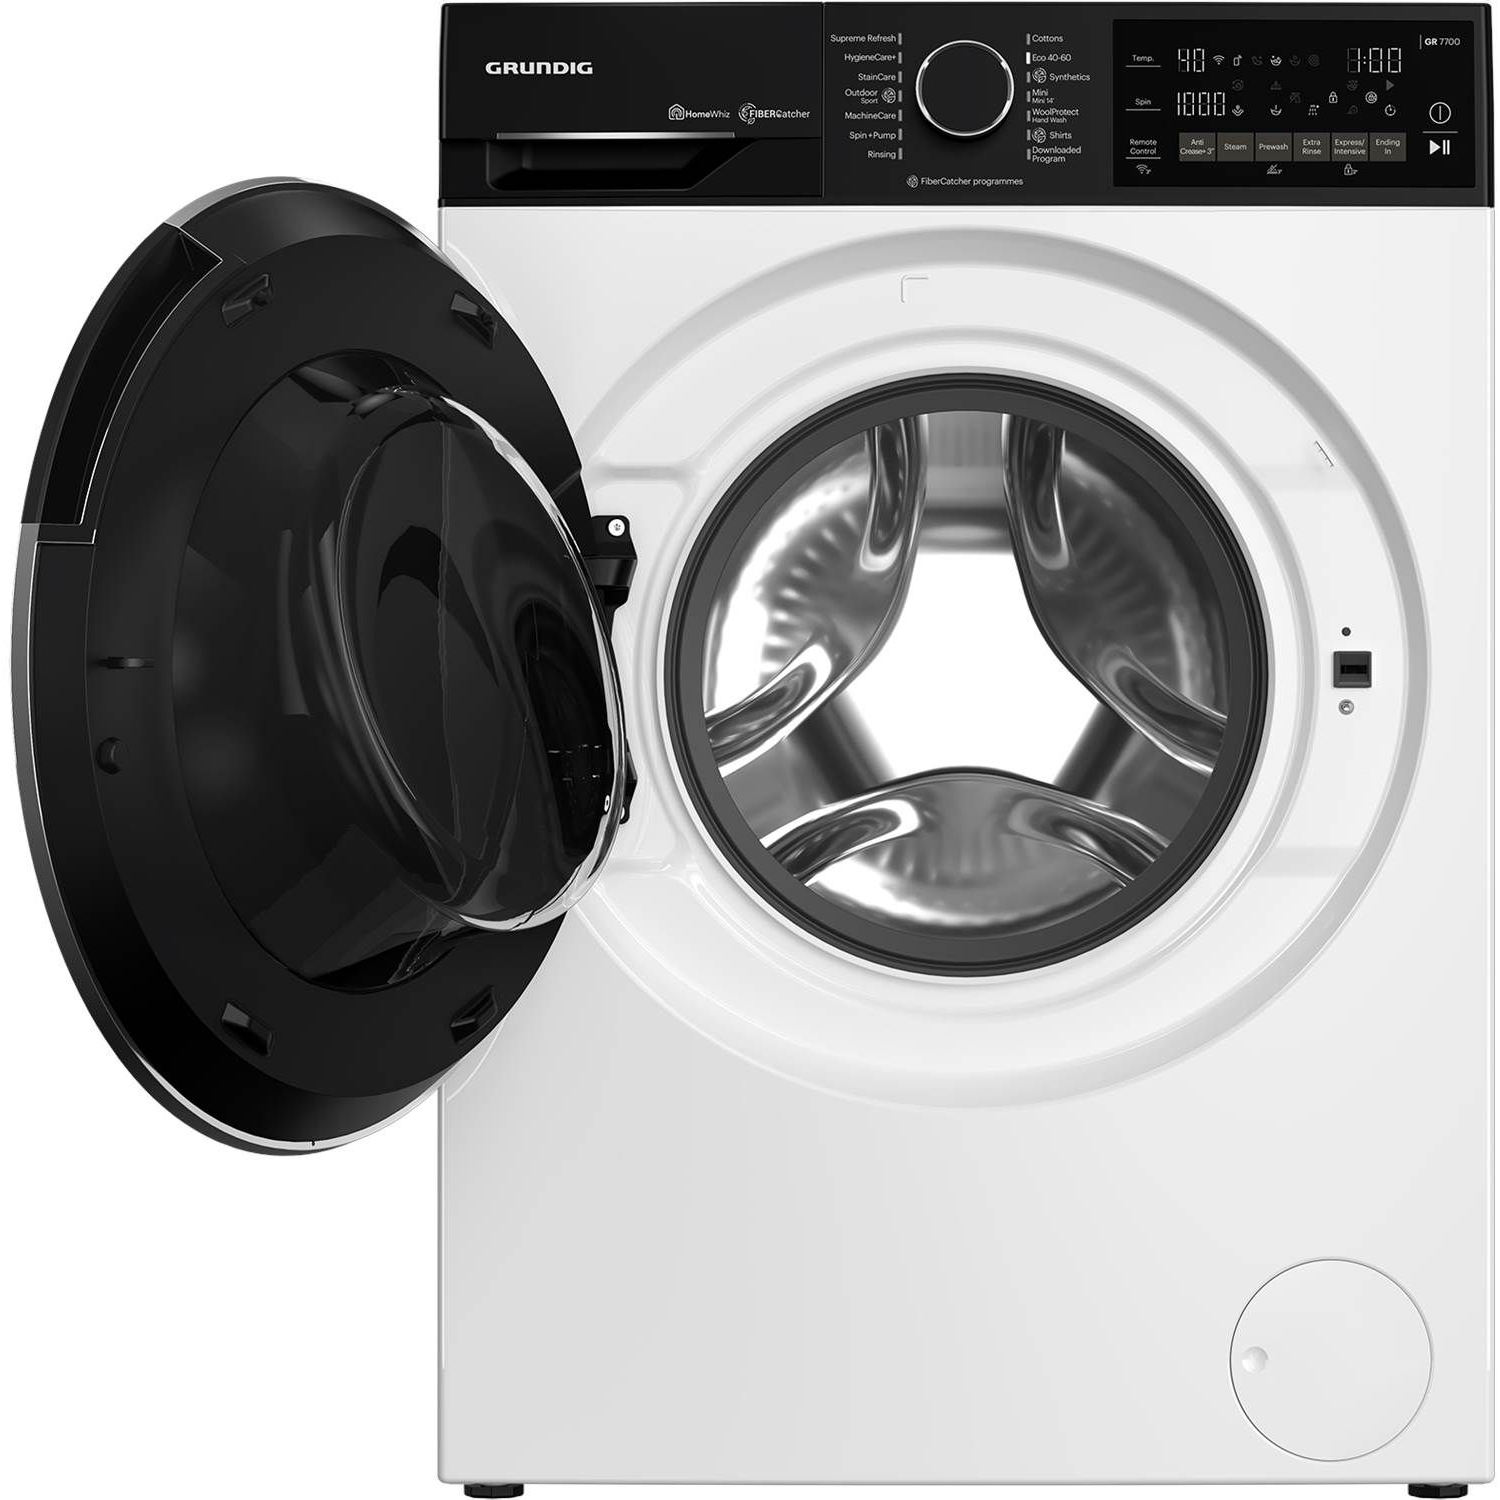 Grundig GWPE810E419WW - Frontbetjent vaskemaskine